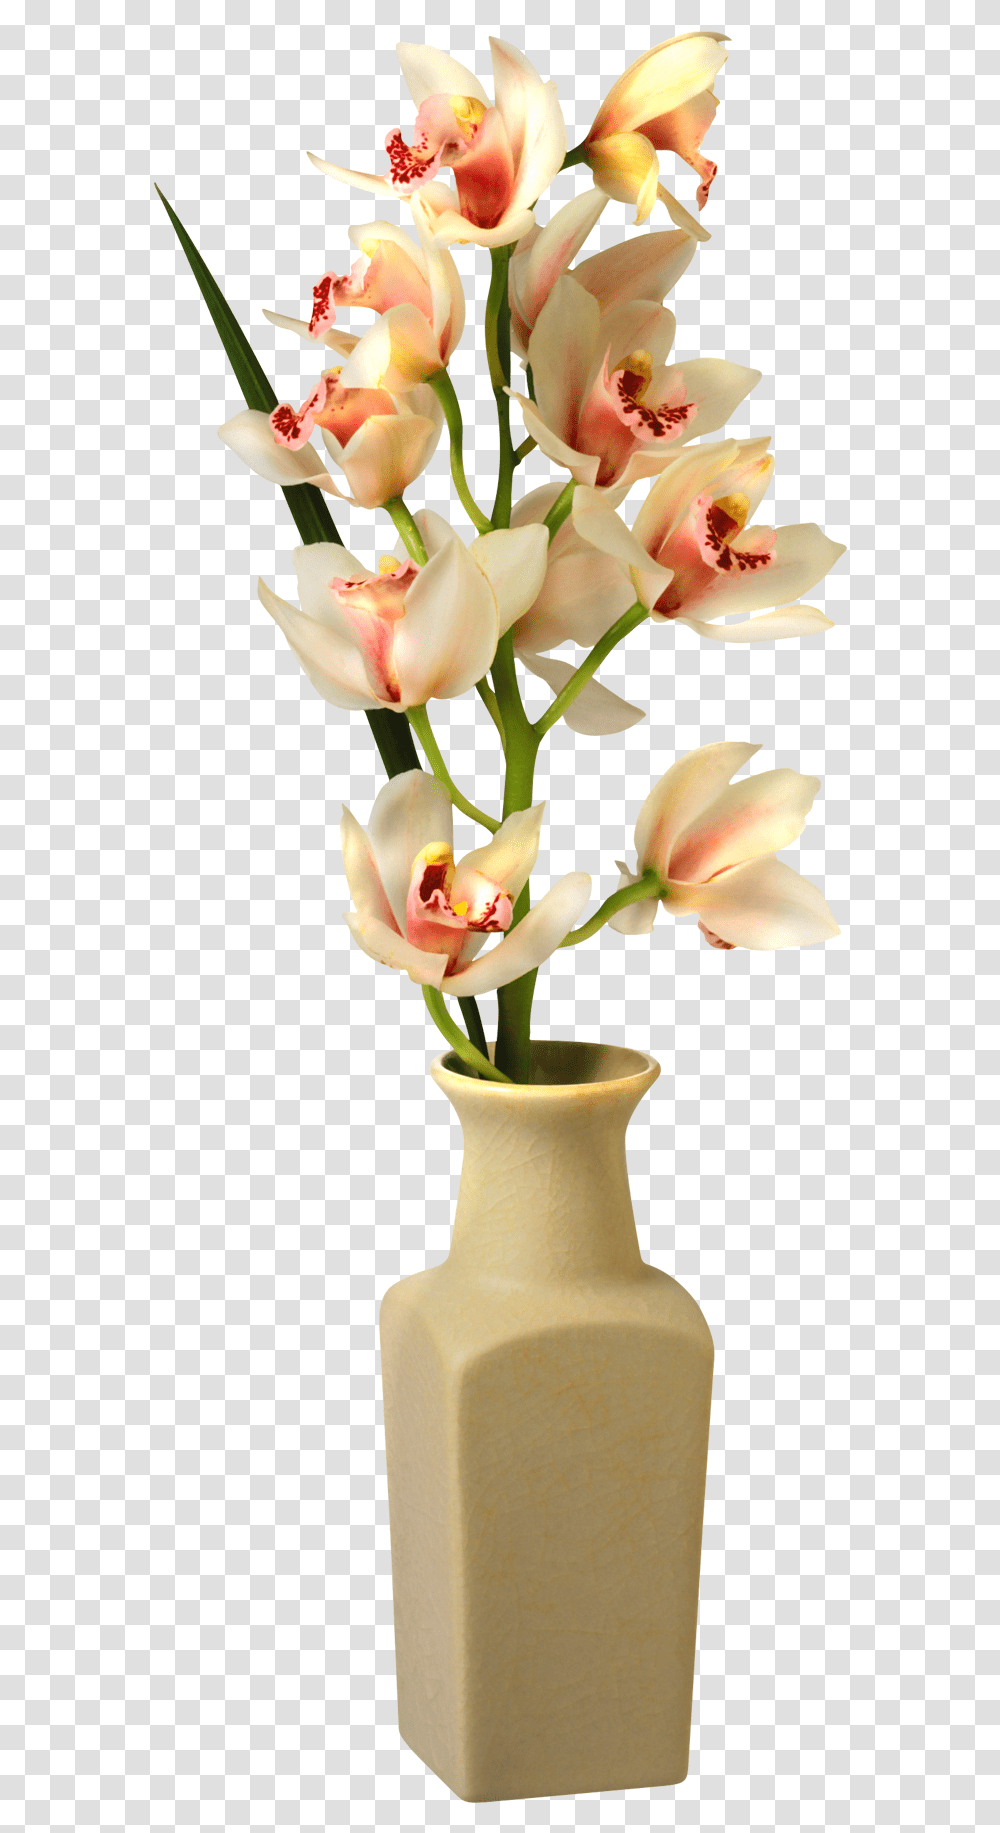 Tropical Flower Vase Flower Vase, Plant, Jar, Pottery, Blossom Transparent Png